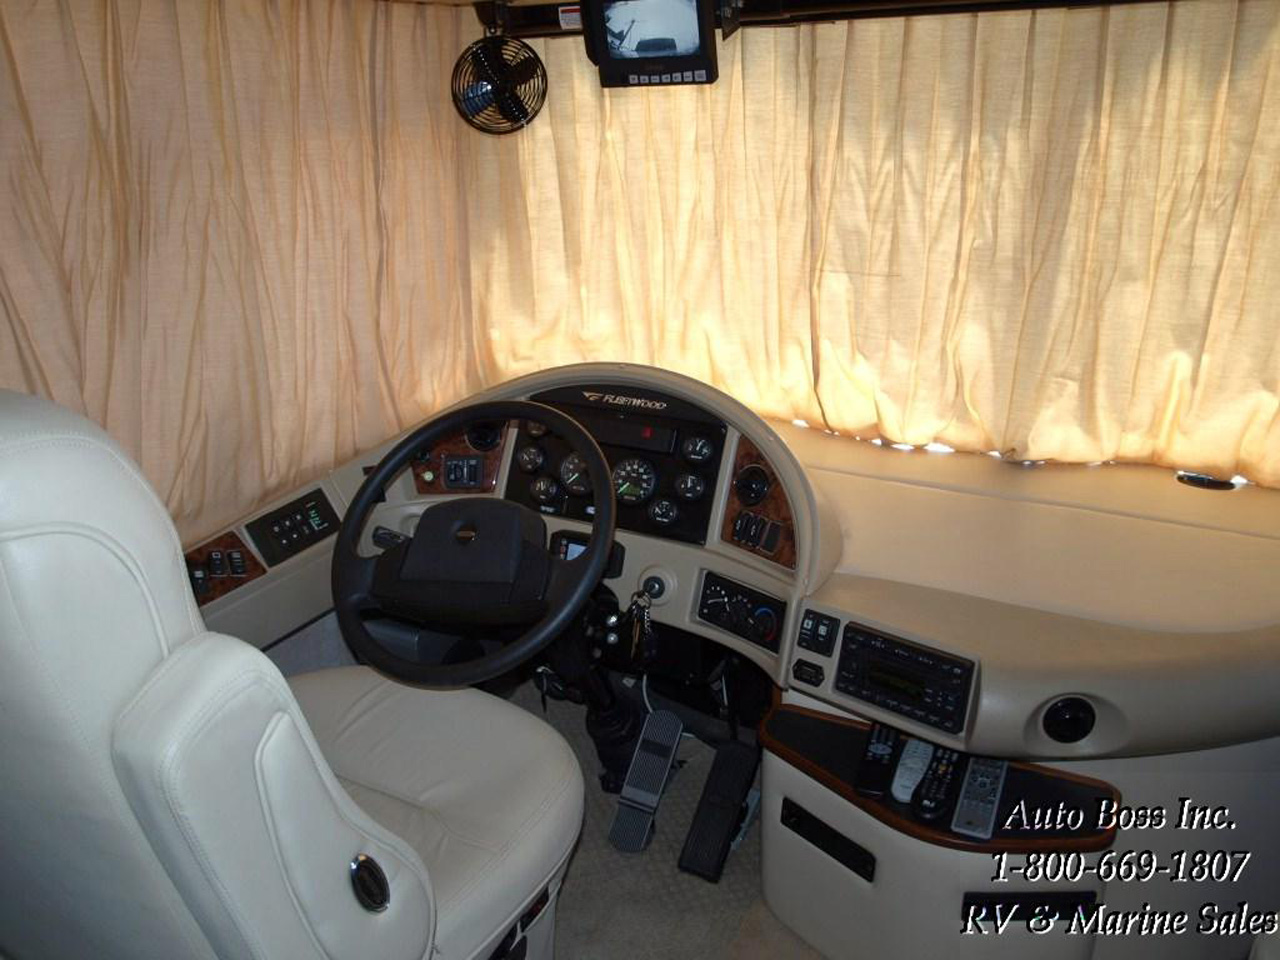 2010-06-26, 019, Cockpit